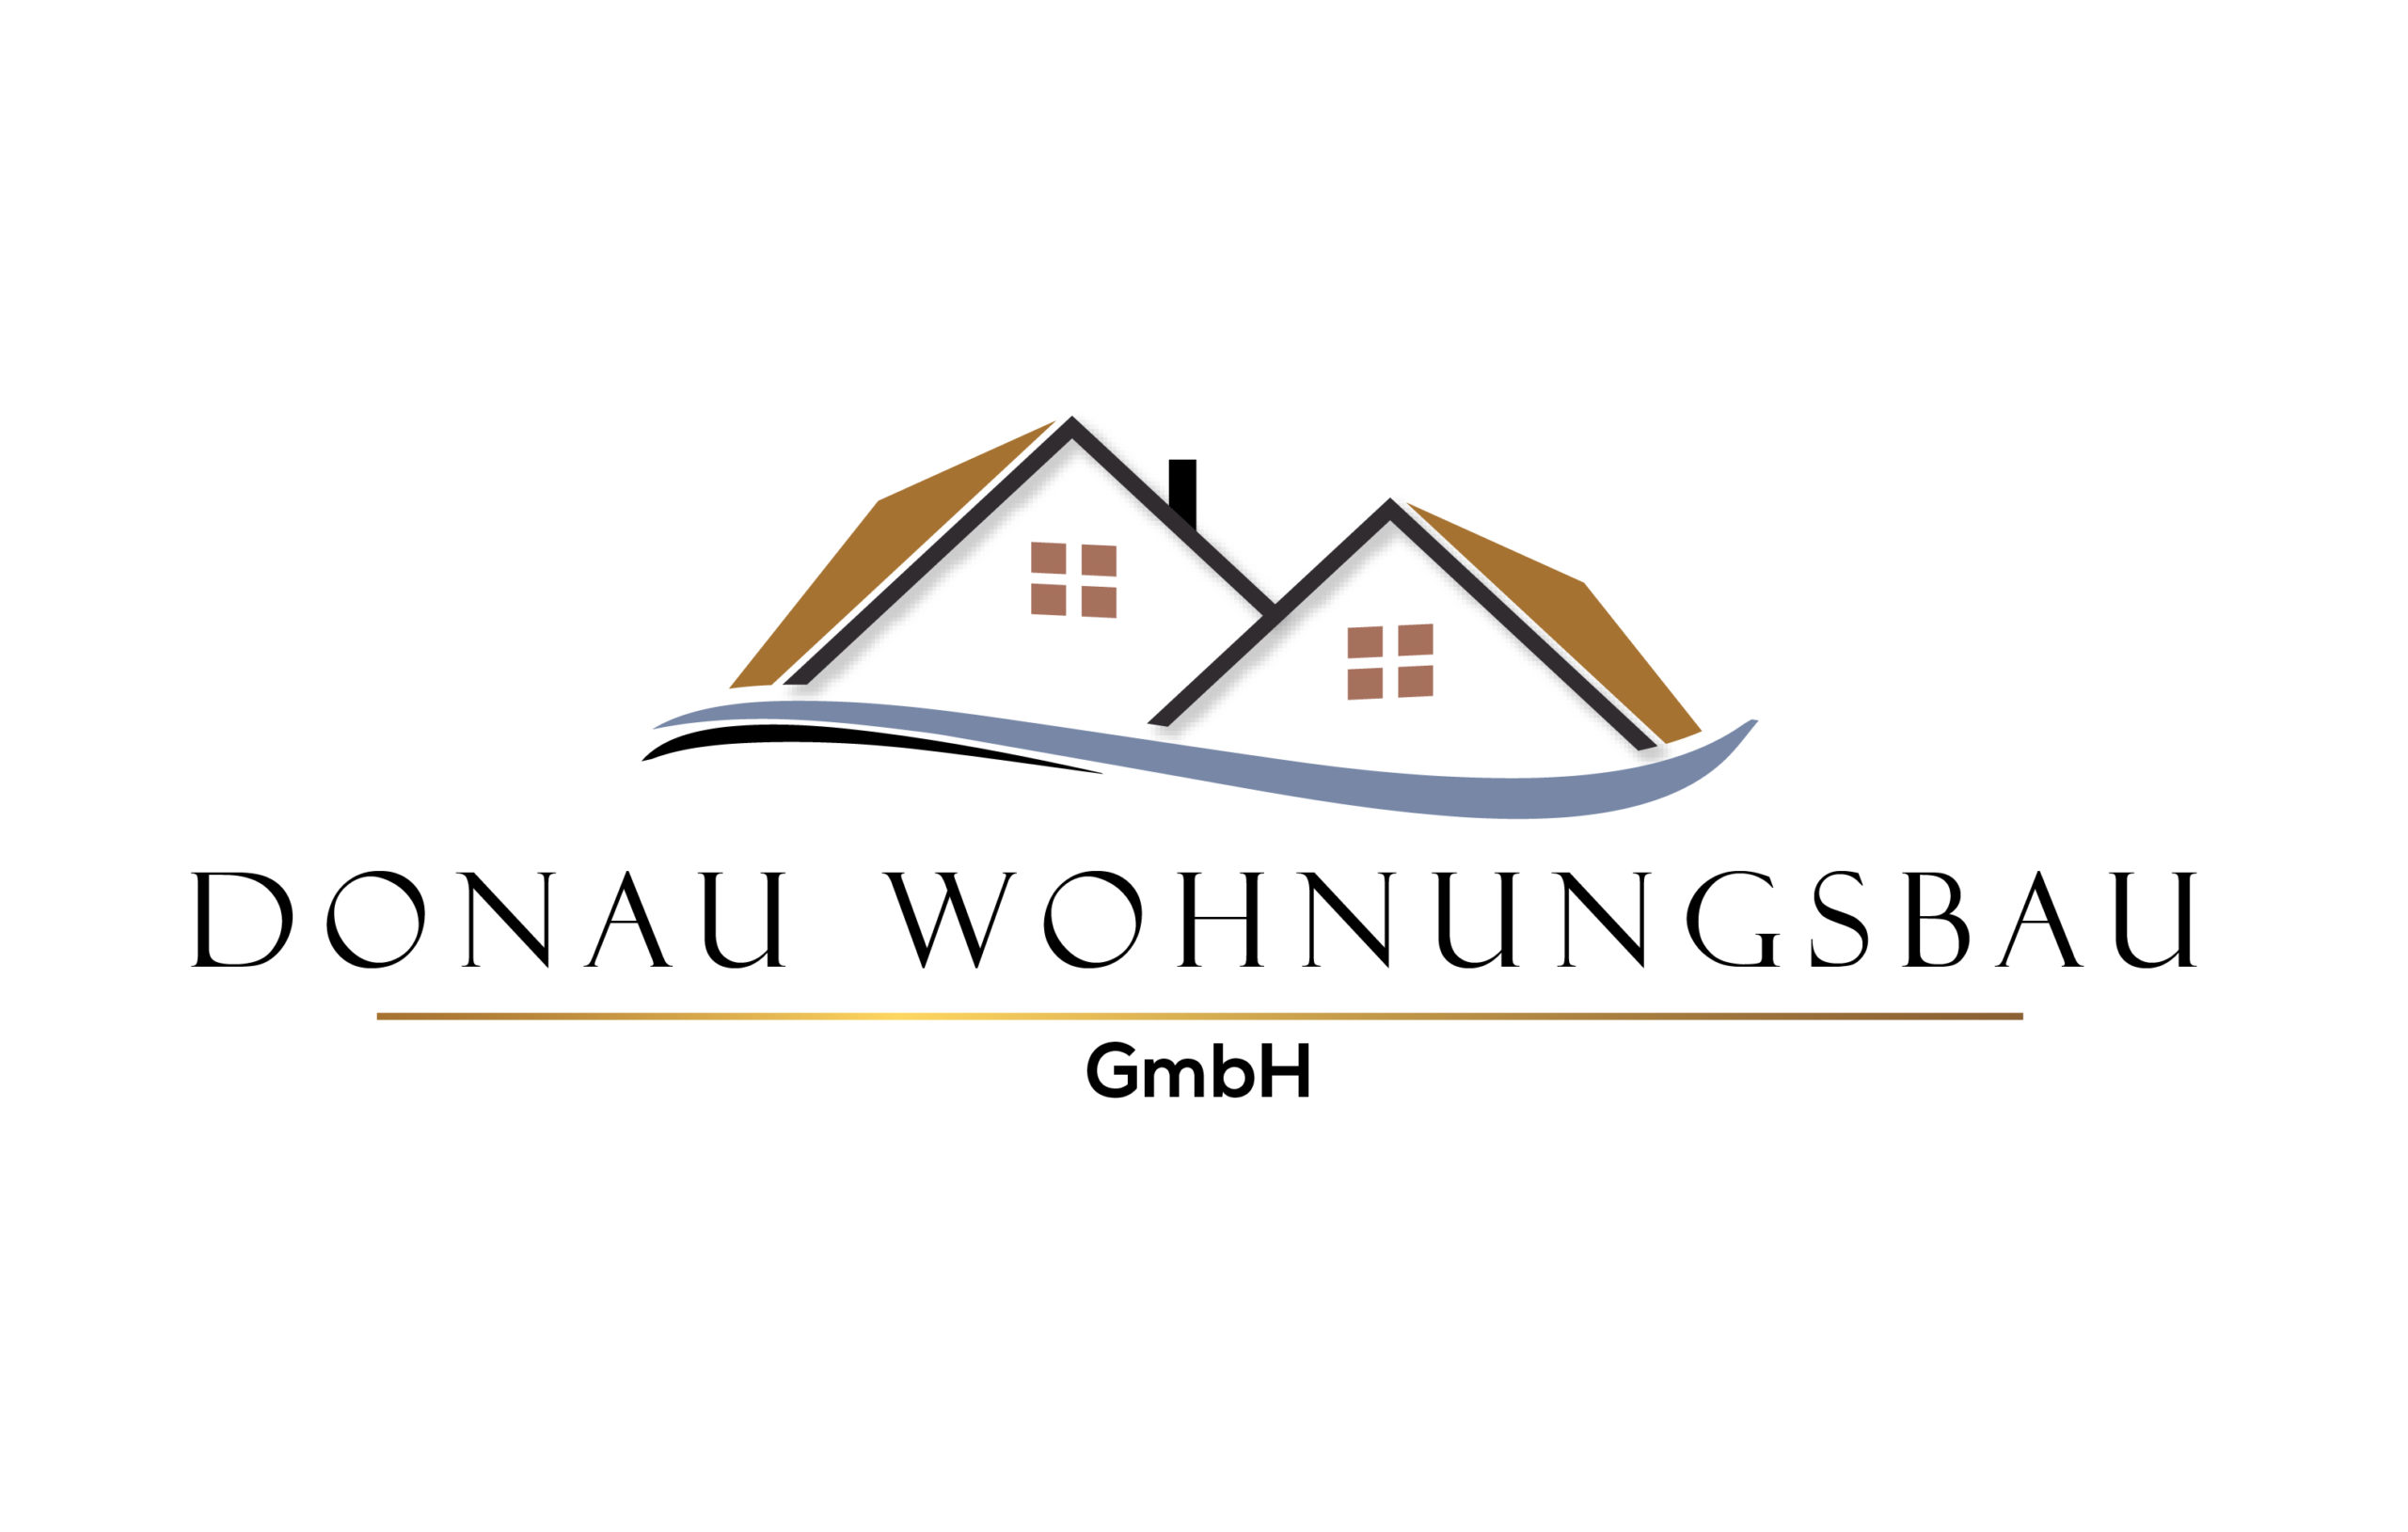 Donau Wohnungsbau GmbH